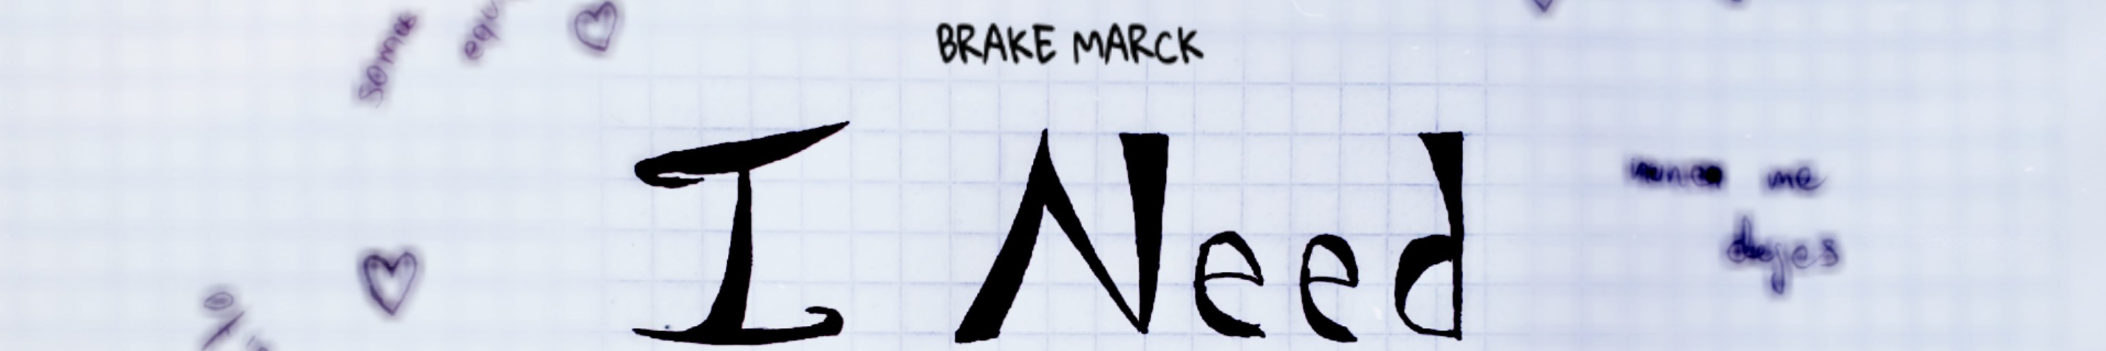 Brake Marck